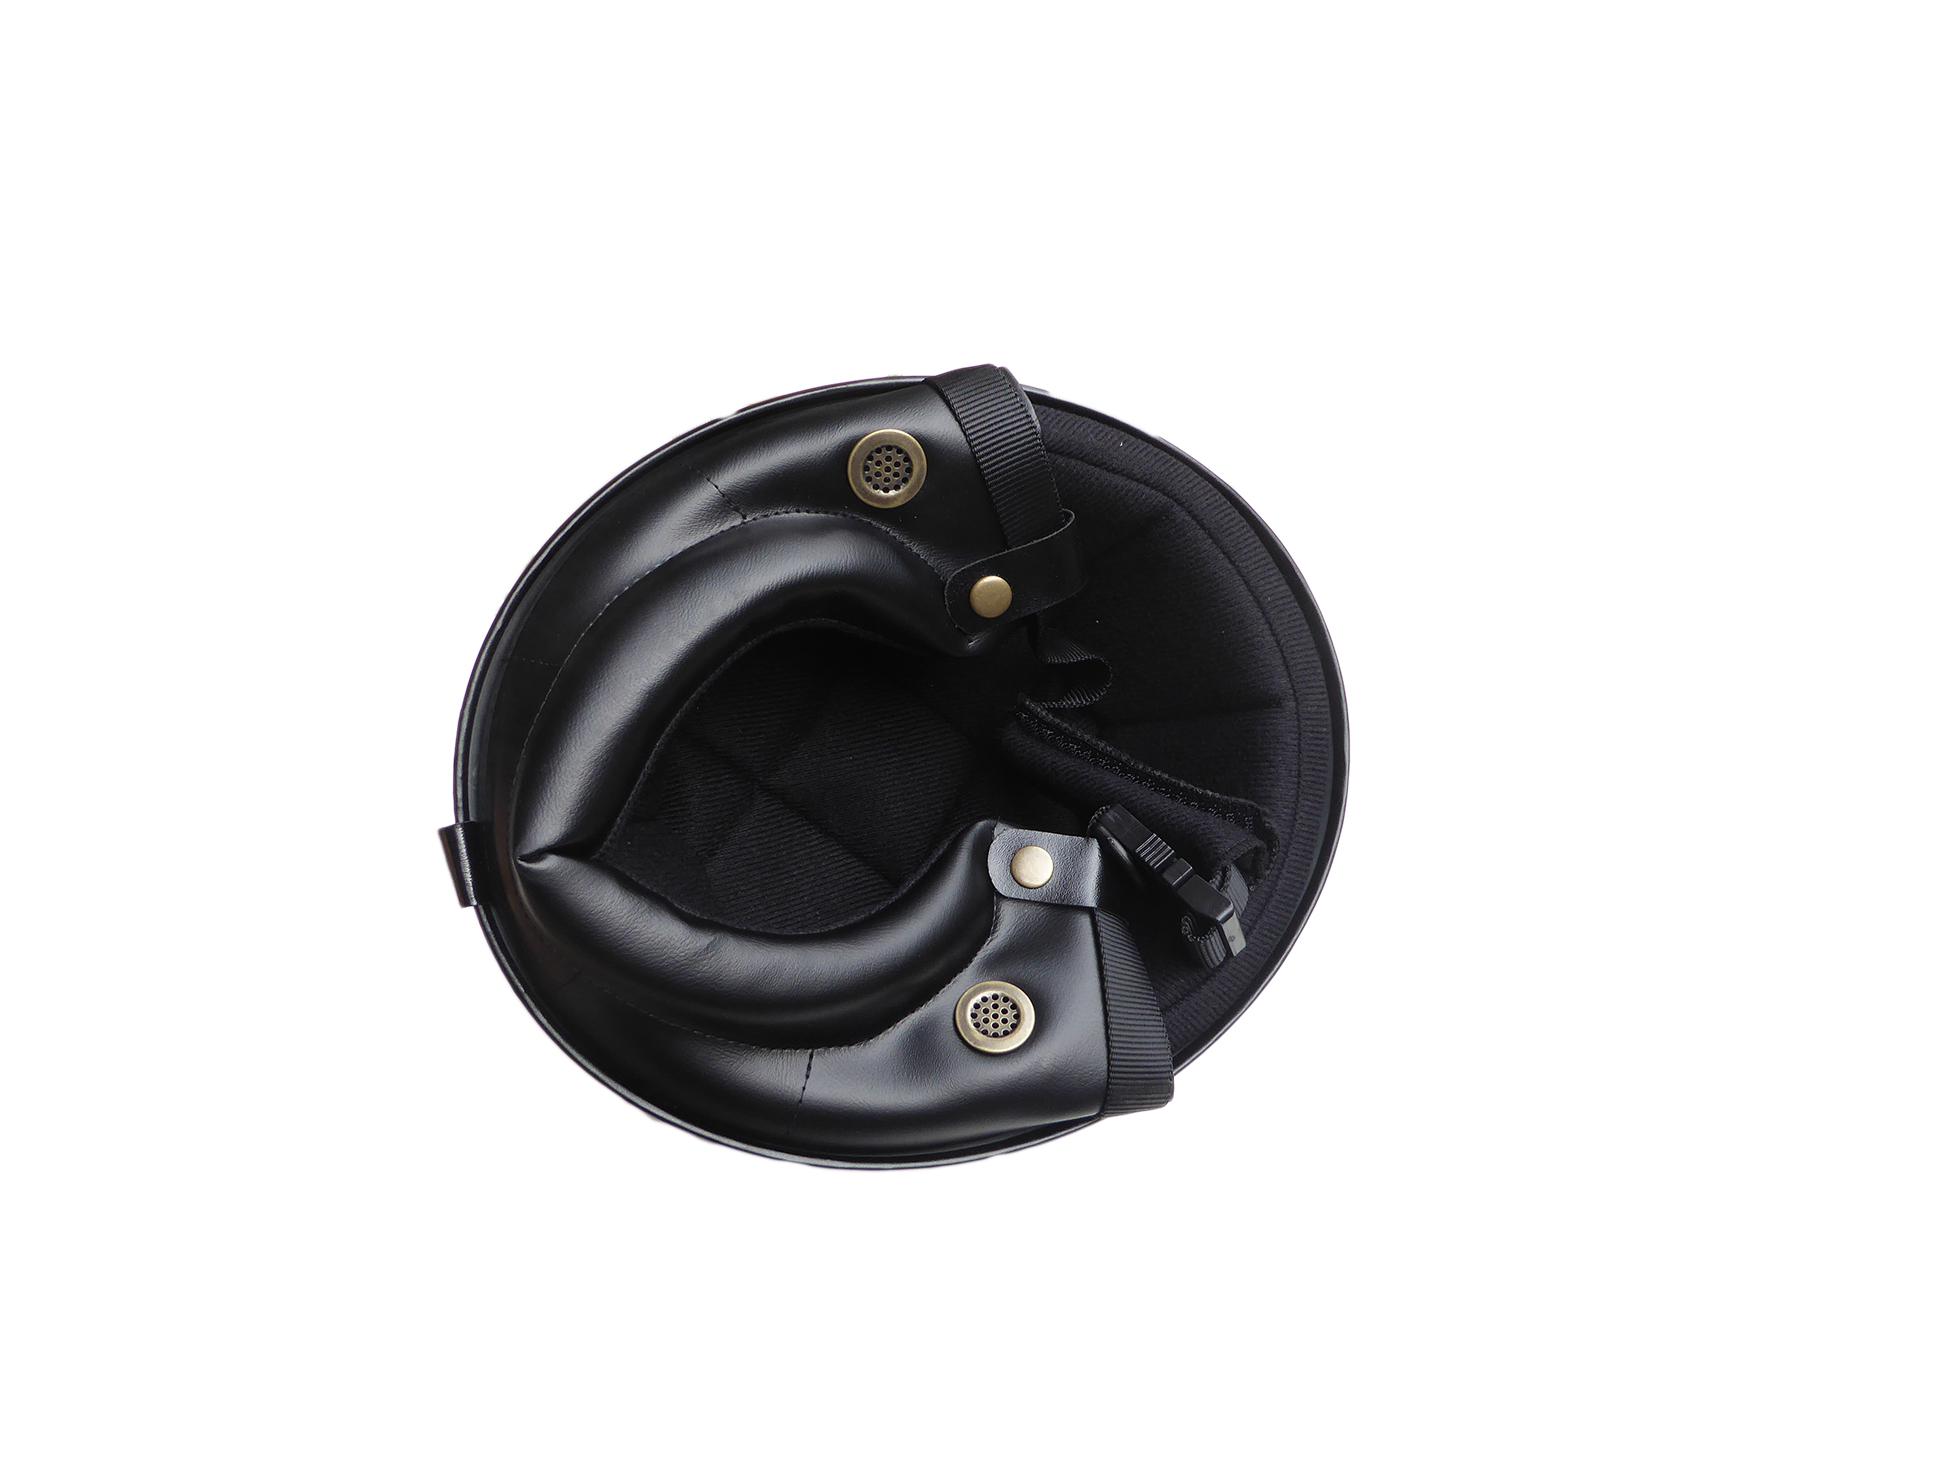 Halbschalen Helm Silber/Schwarz  - Größe: M